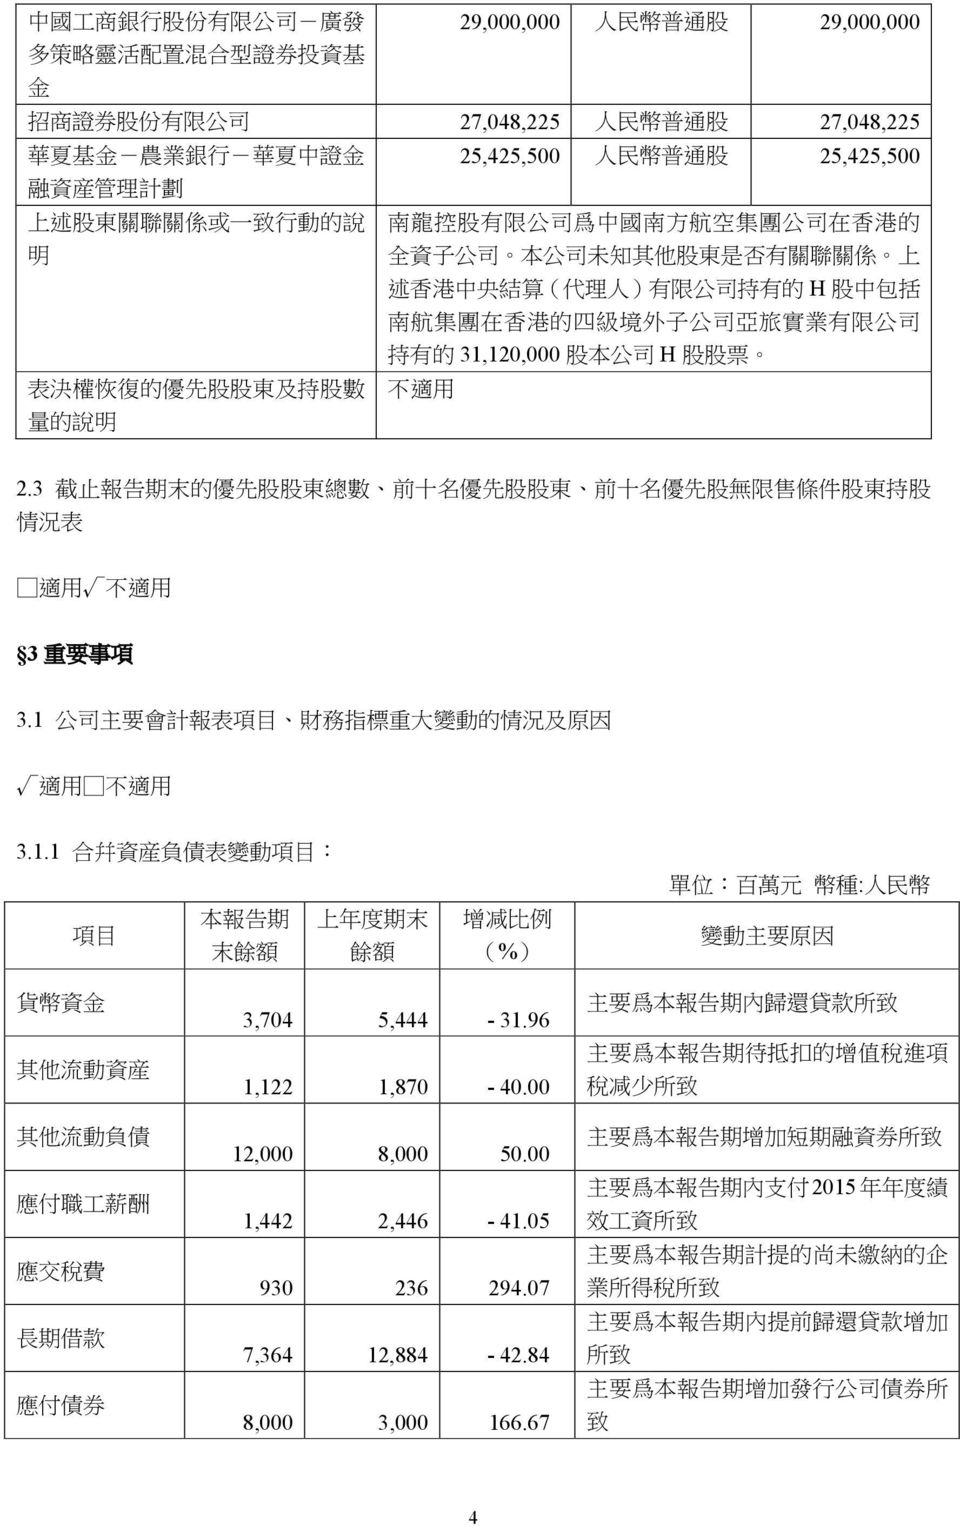 南 航 集 團 在 香 港 的 四 級 境 外 子 公 司 亞 旅 實 業 有 限 公 司 持 有 的 31,120,000 股 本 公 司 H 股 股 票 表 決 權 恢 復 的 優 先 股 股 東 及 持 股 數 不 適 用 量 的 說 明 2.